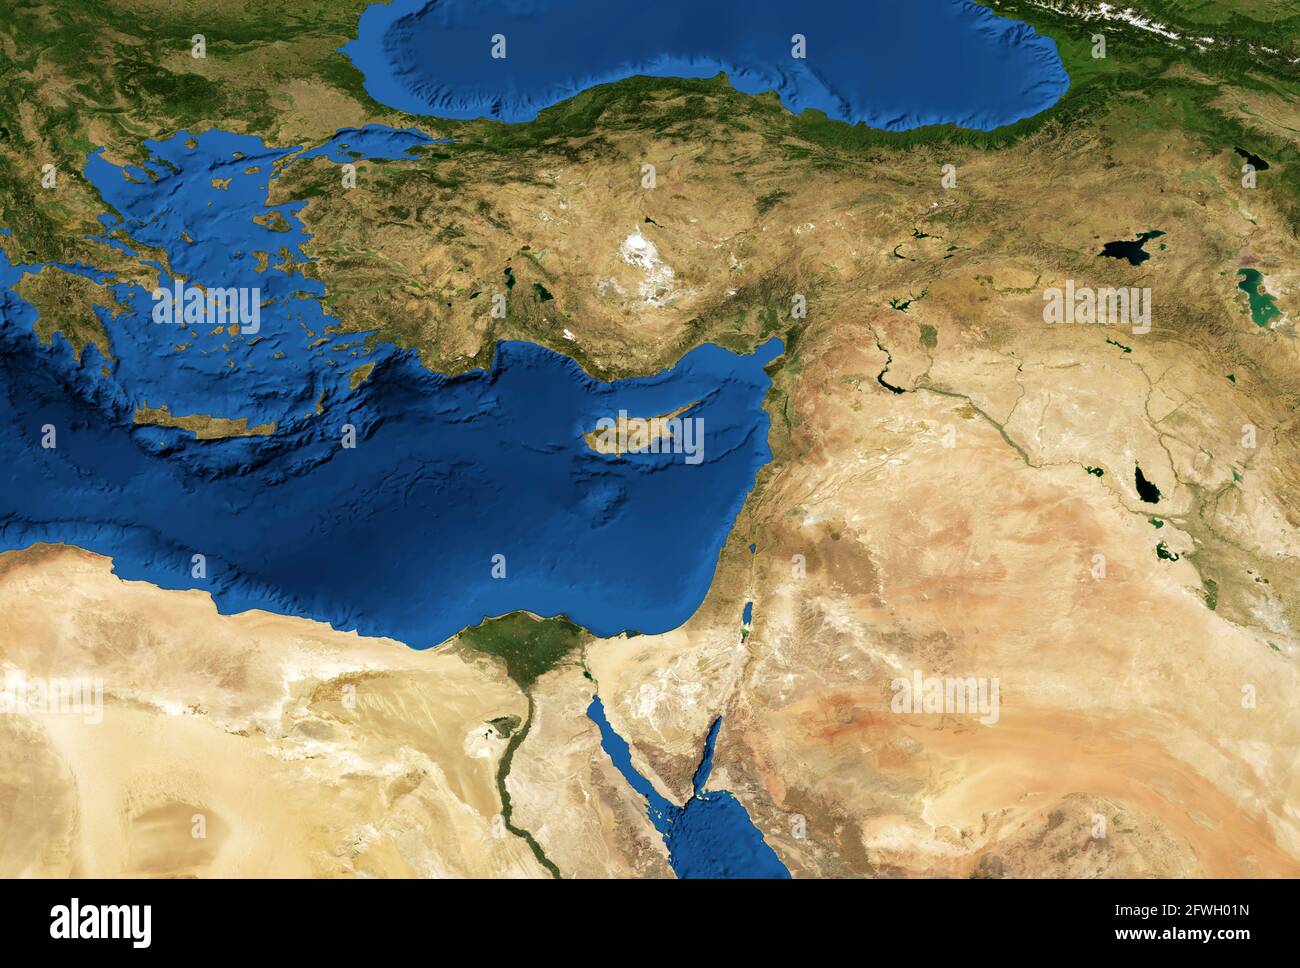 Carte du Moyen-Orient en photo satellite globale, vue à plat de la partie du monde depuis l'espace. Carte physique détaillée de la Turquie, de la Syrie, d'Israël, du Liban, de l'Égypte, Jord Banque D'Images